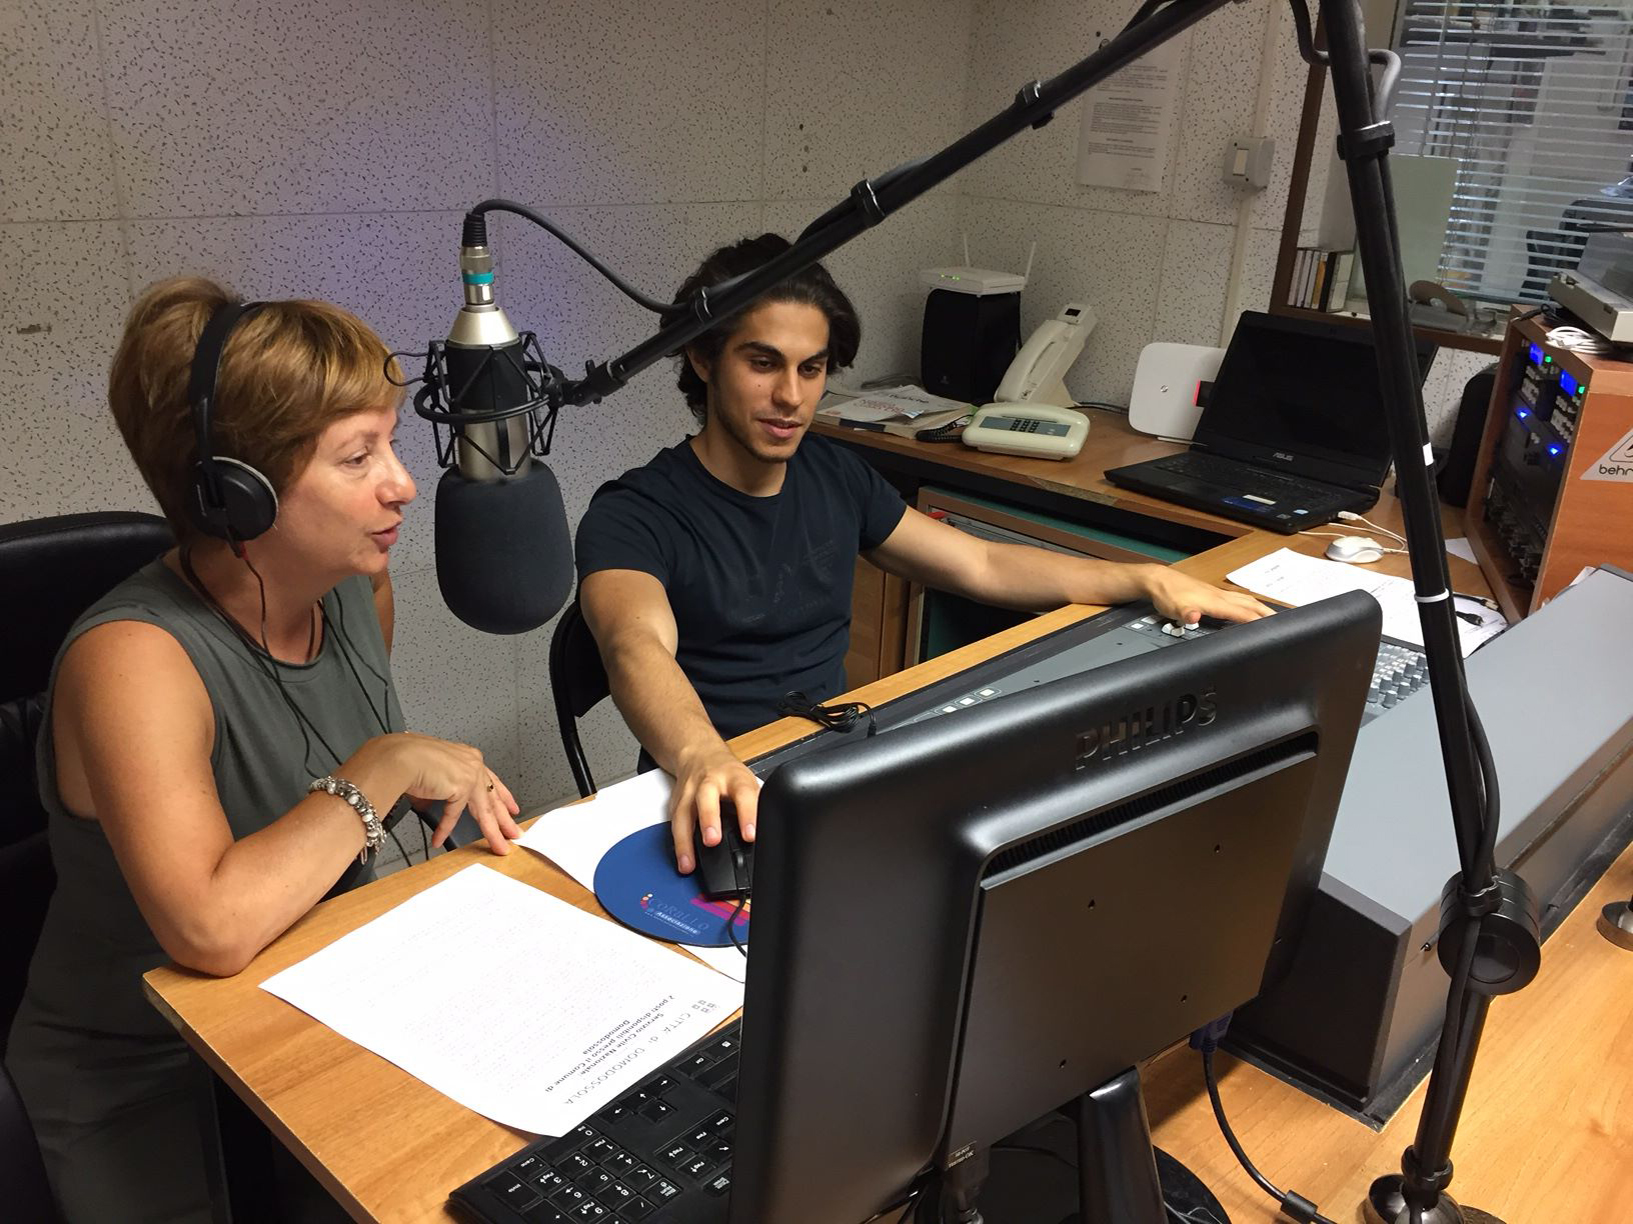 Un momento del progetto in radio con gli studenti di Domodossola